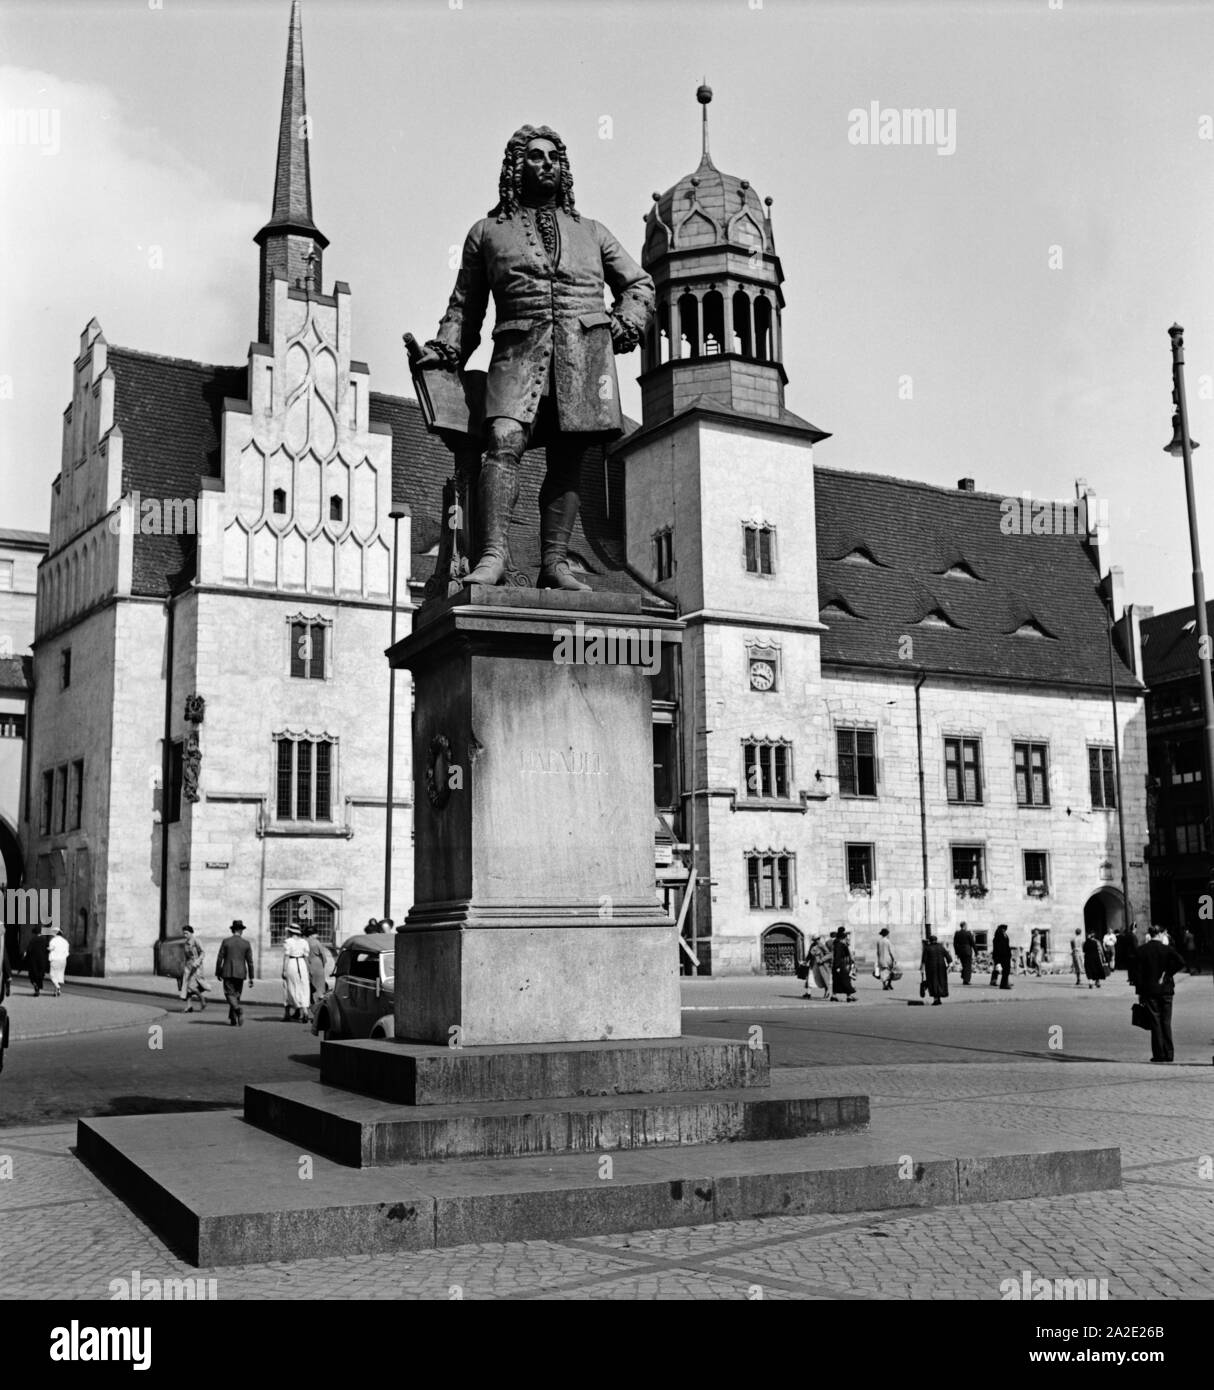 Altes Rathaus und Händel Denkmal à Halle an der Saale, Allemagne Allemagne Années 1930 er Jahre. L'hôtel de ville et monument Haendel à Halle à rivière Saale, Allemagne 1930. Banque D'Images